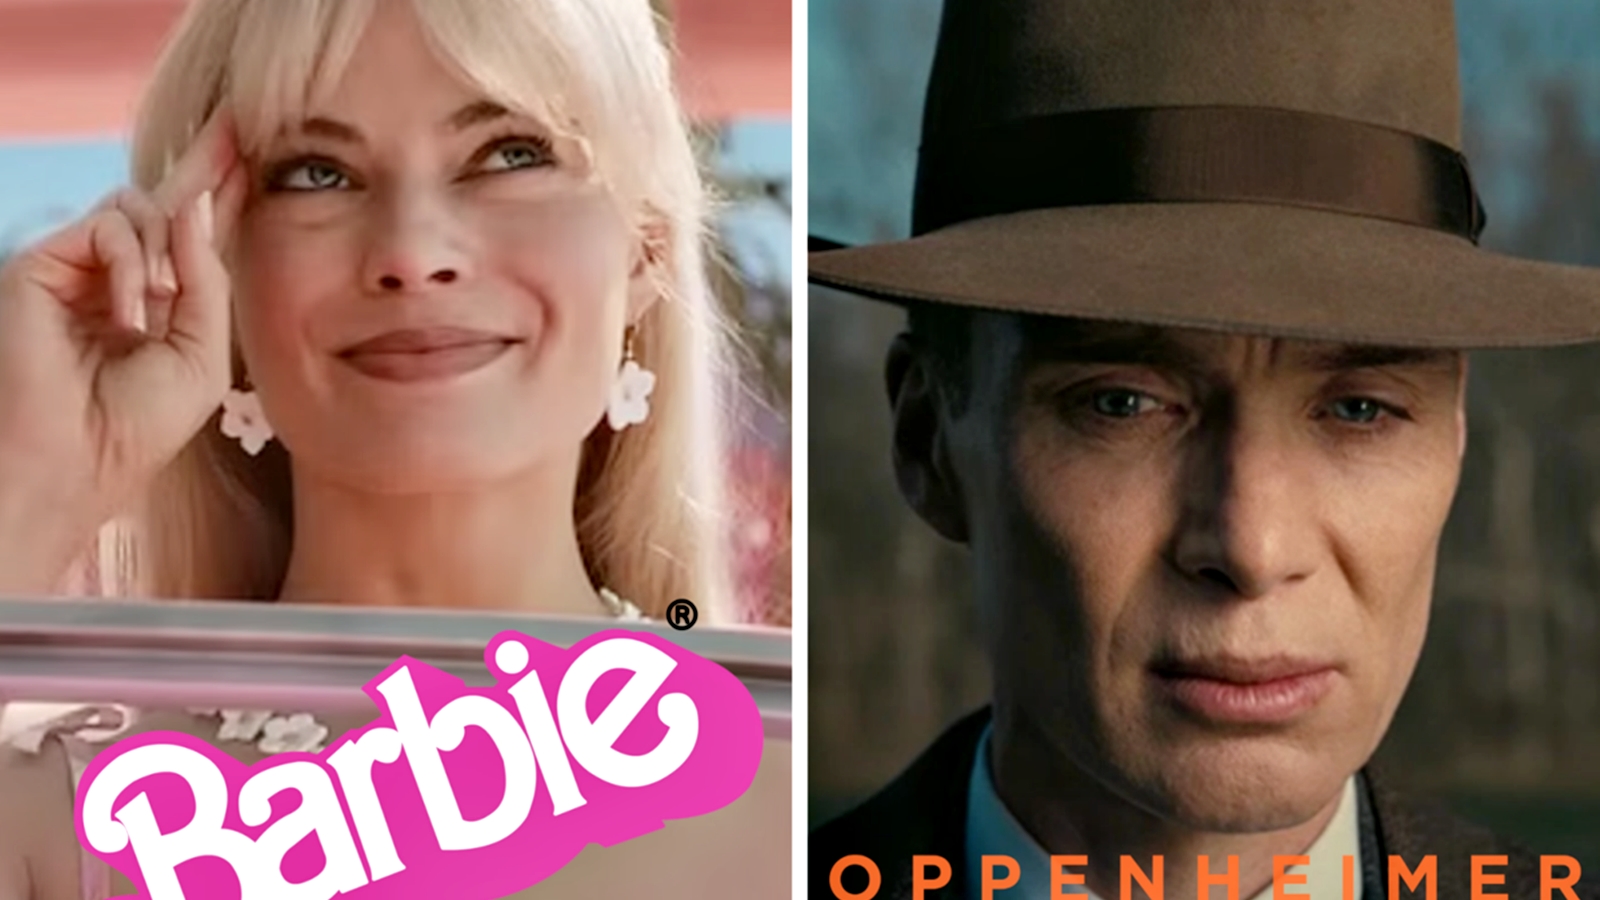 Barbie e Oppenheimer: oltre 20.000 spettatori americani vedranno i due film  nelle sale AMC nello stesso